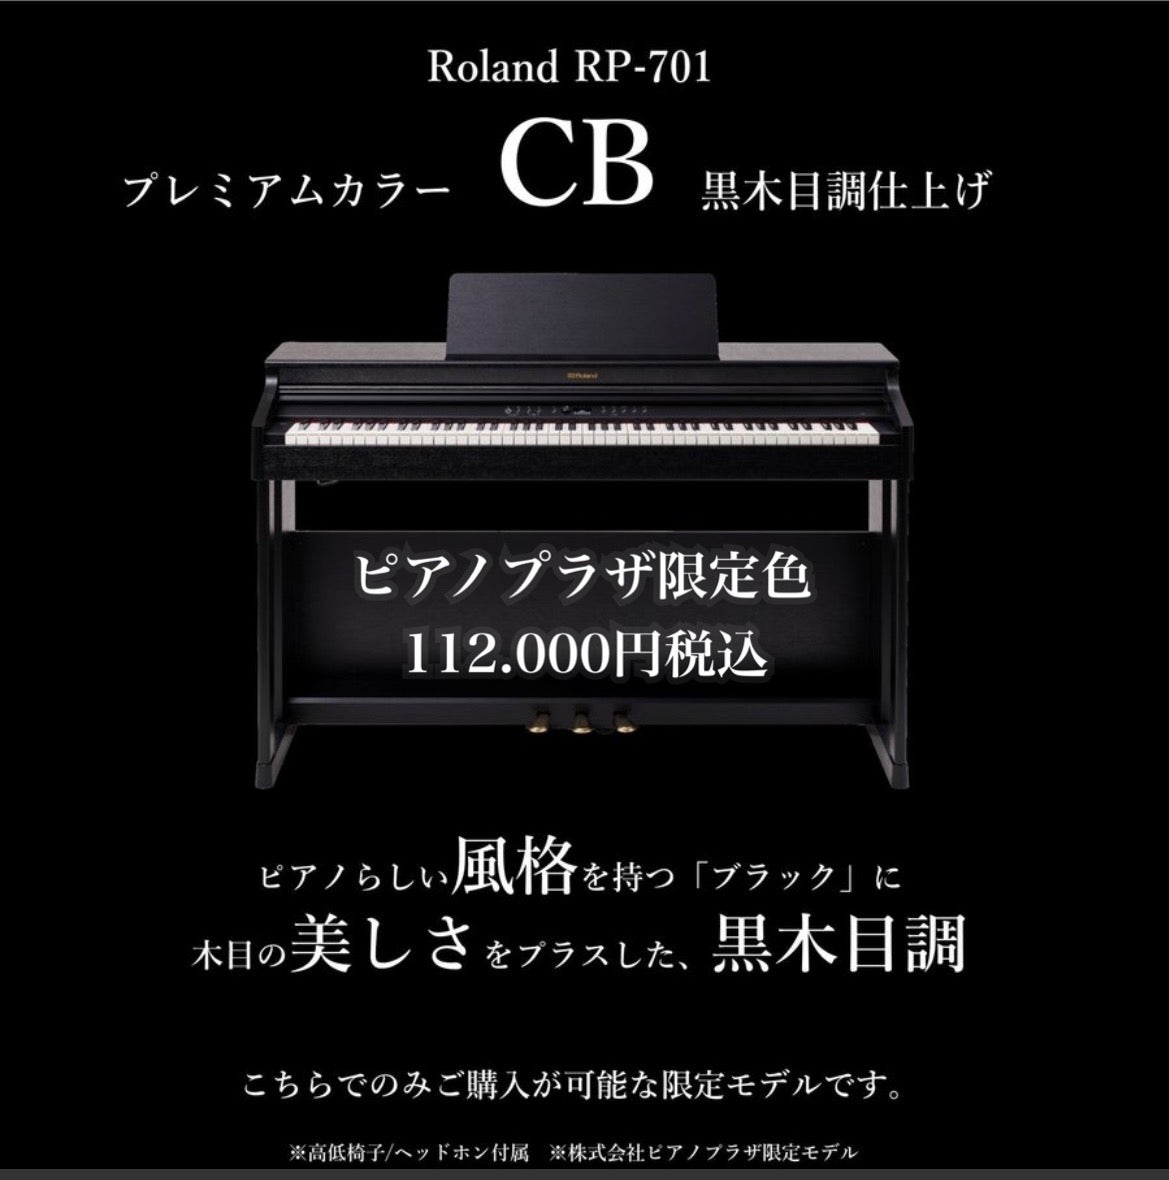 特別価格より更にデジコ割引！！
新品デジタルピアノ
ローランド　RP701-CB　　　　　（ピアノプラザオリジナルモデル）
112,000円（税込）